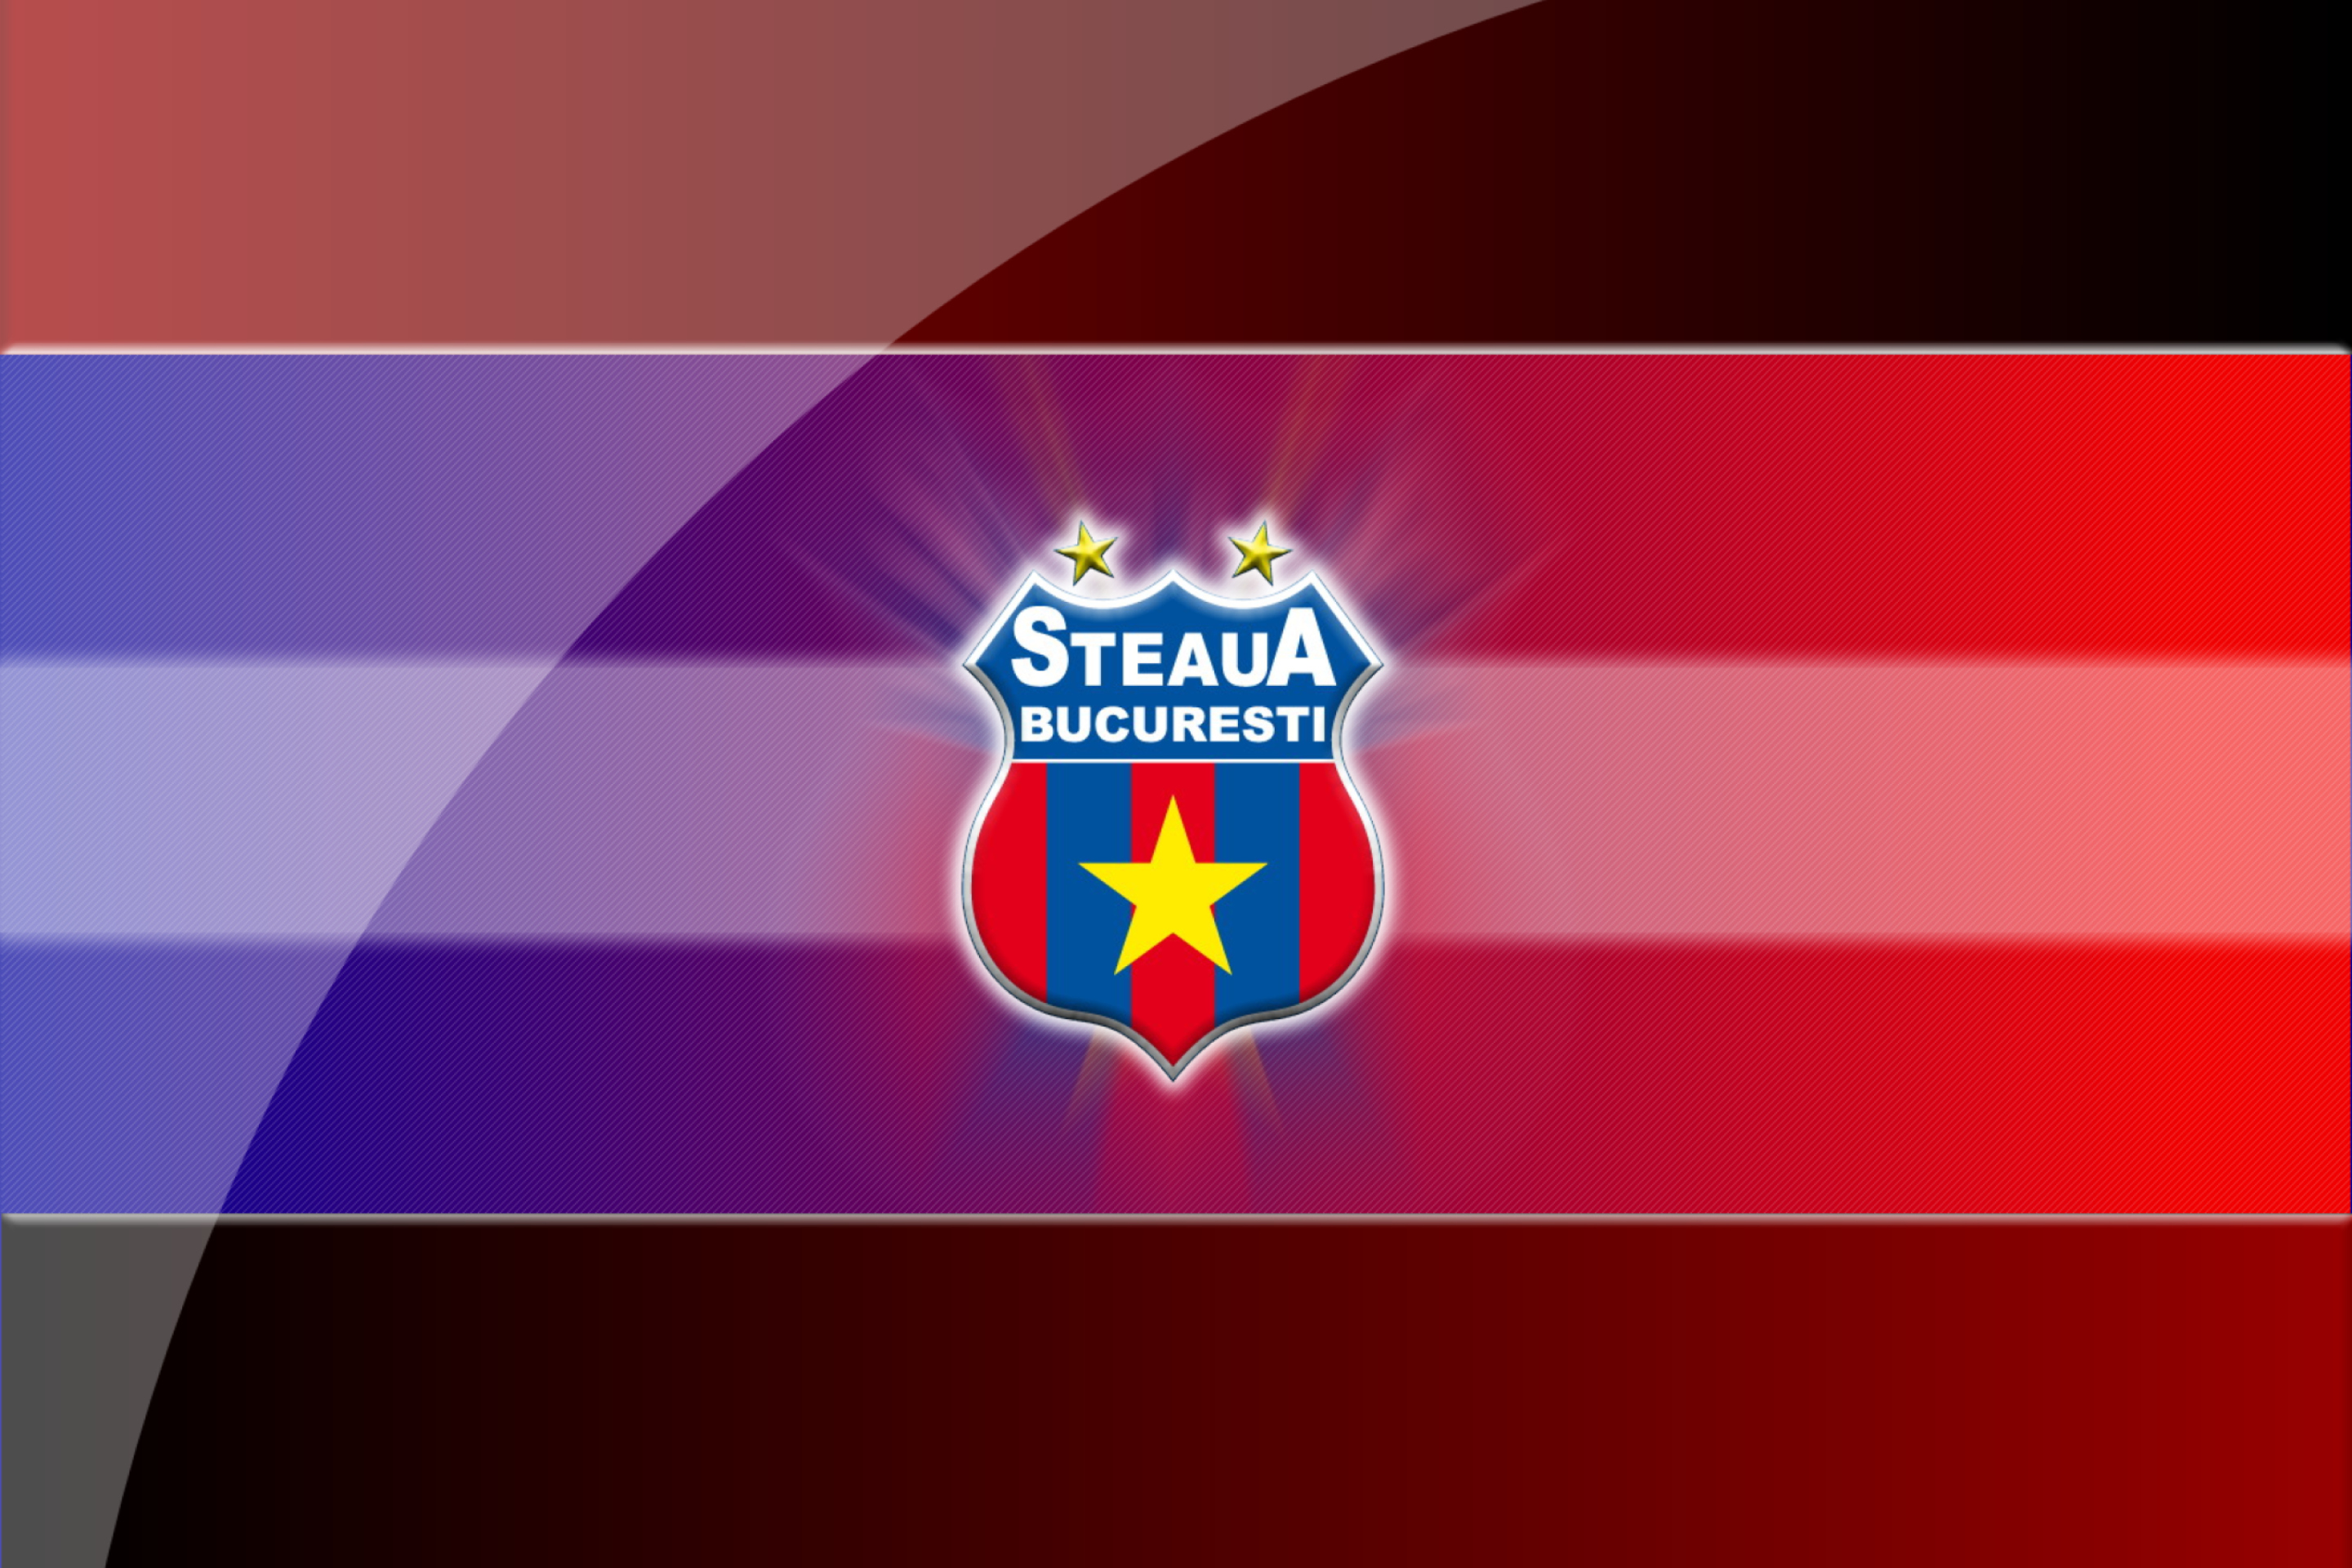 Steaua Bucuresti wallpaper 2880x1920